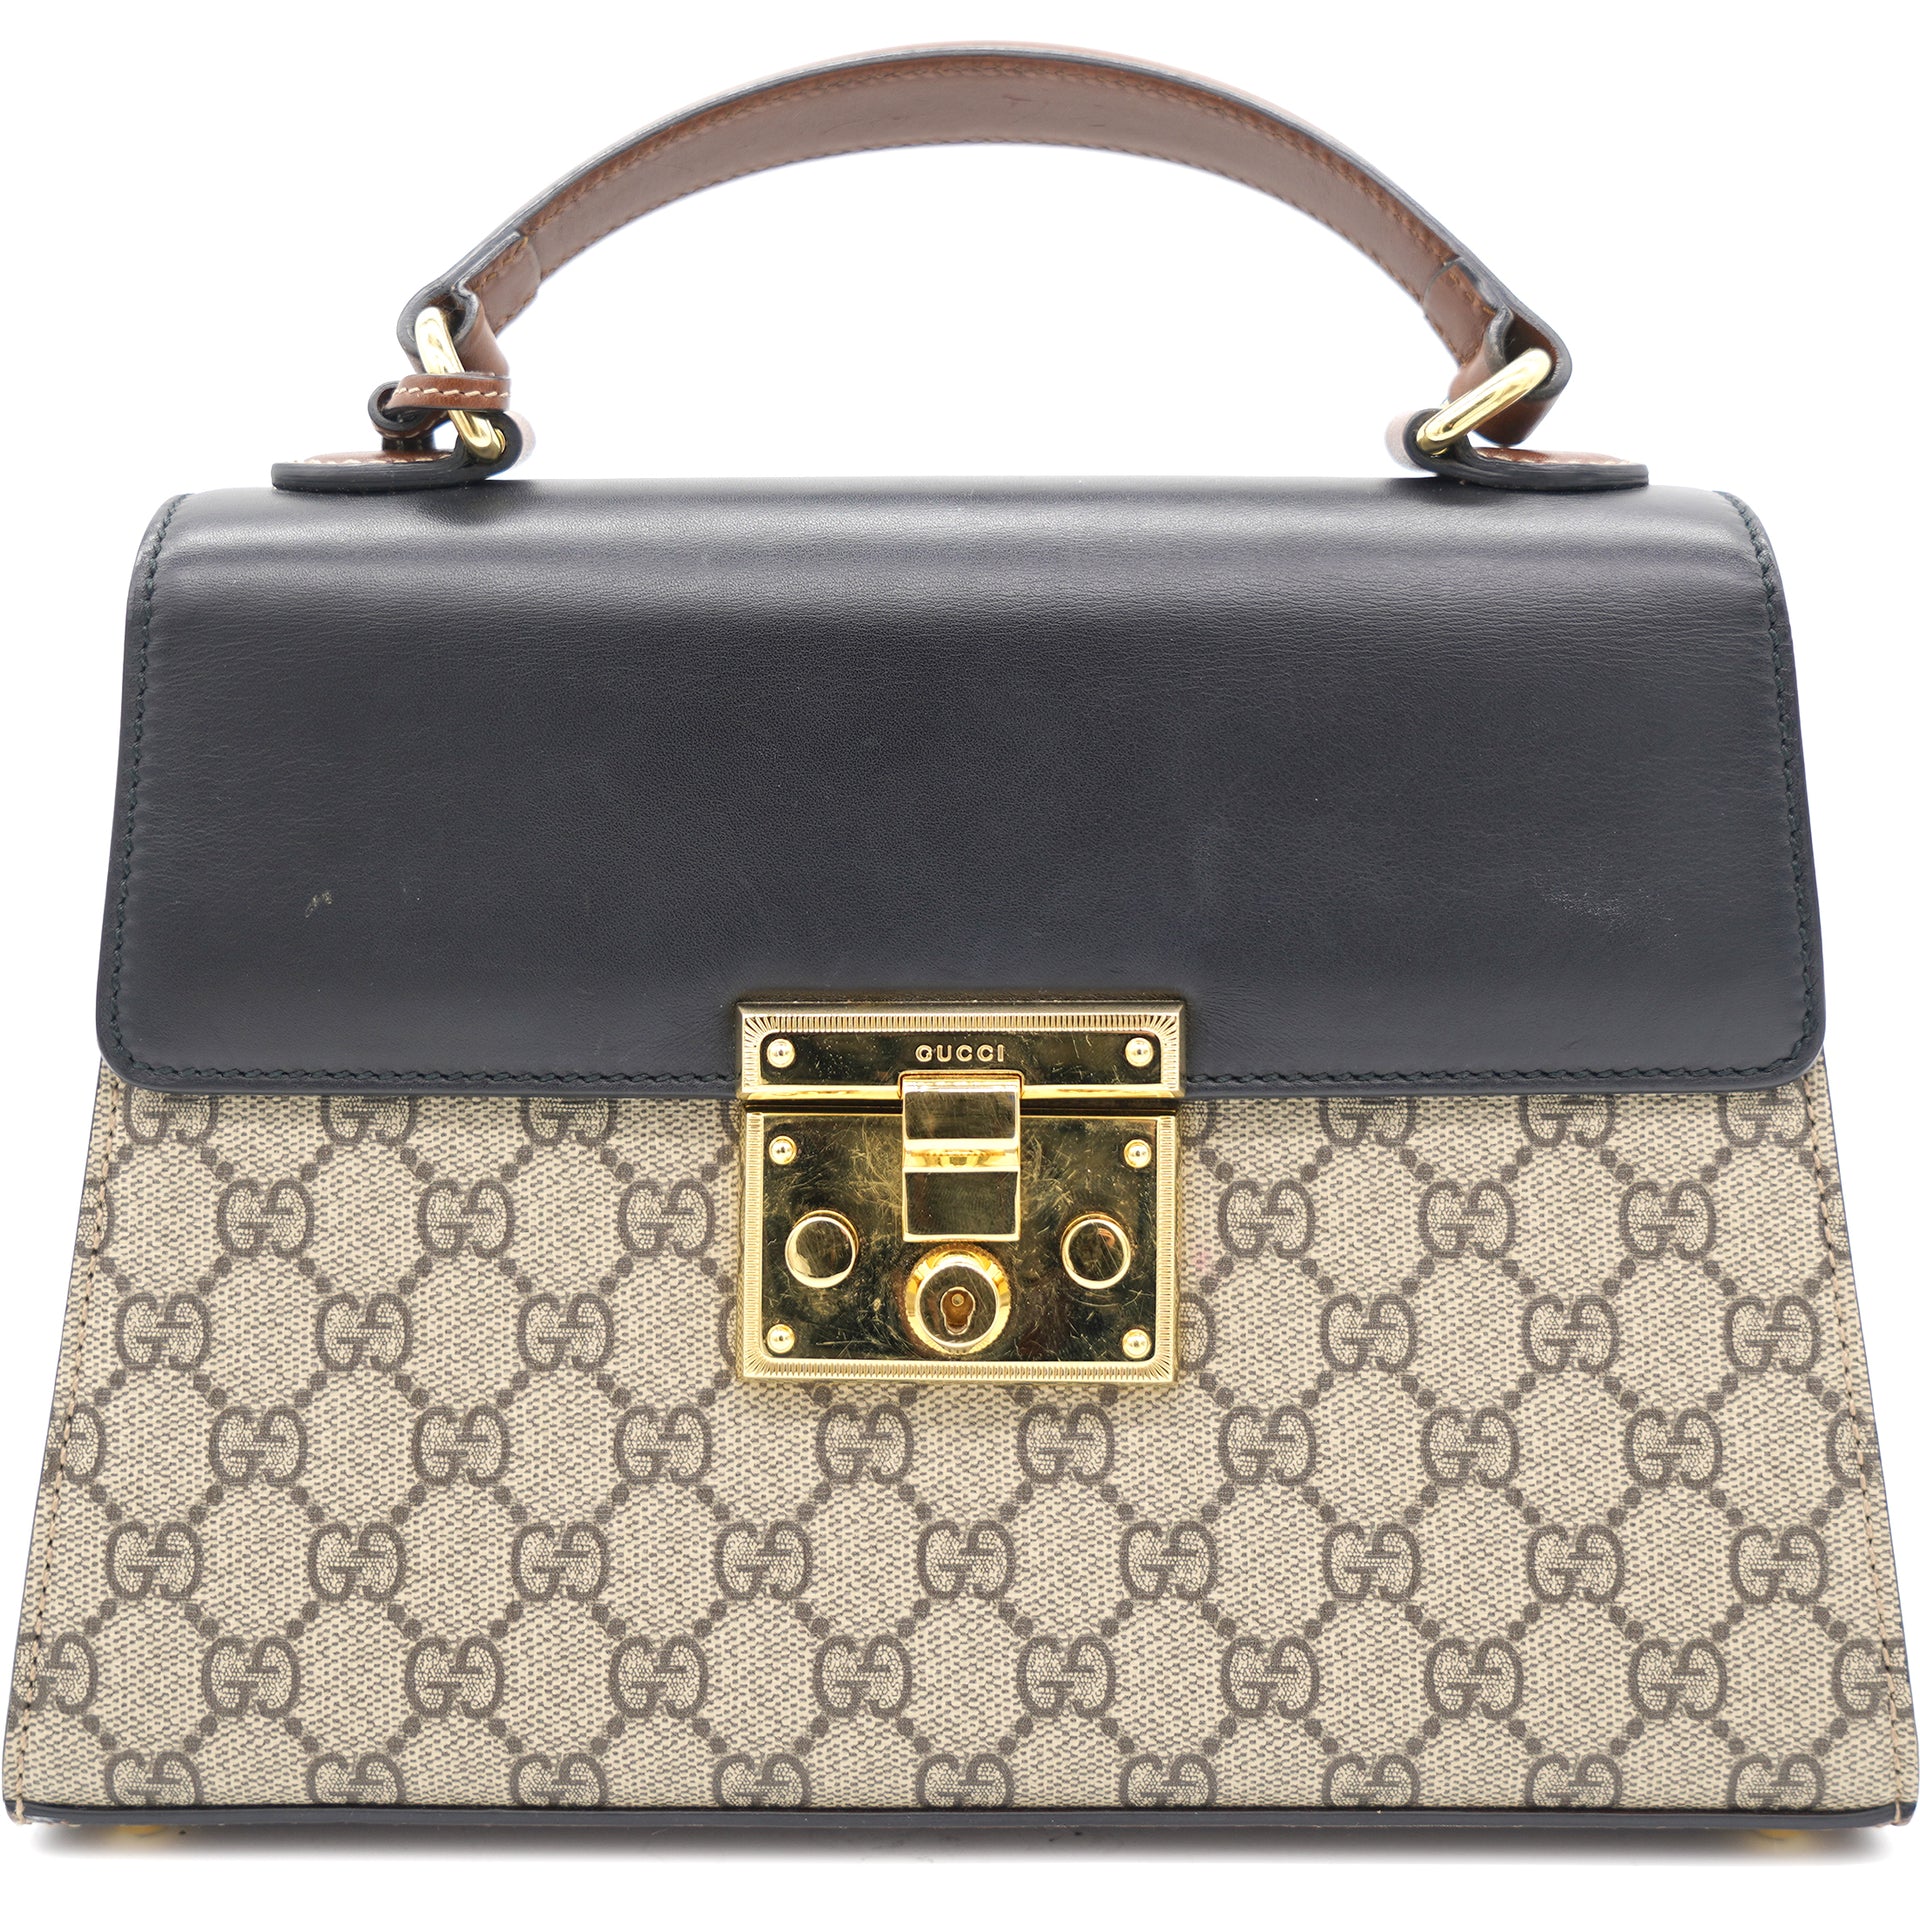 Gucci - Padlock Mini Monogram Brown Top Handle - Crossbody / Shoulder Bag